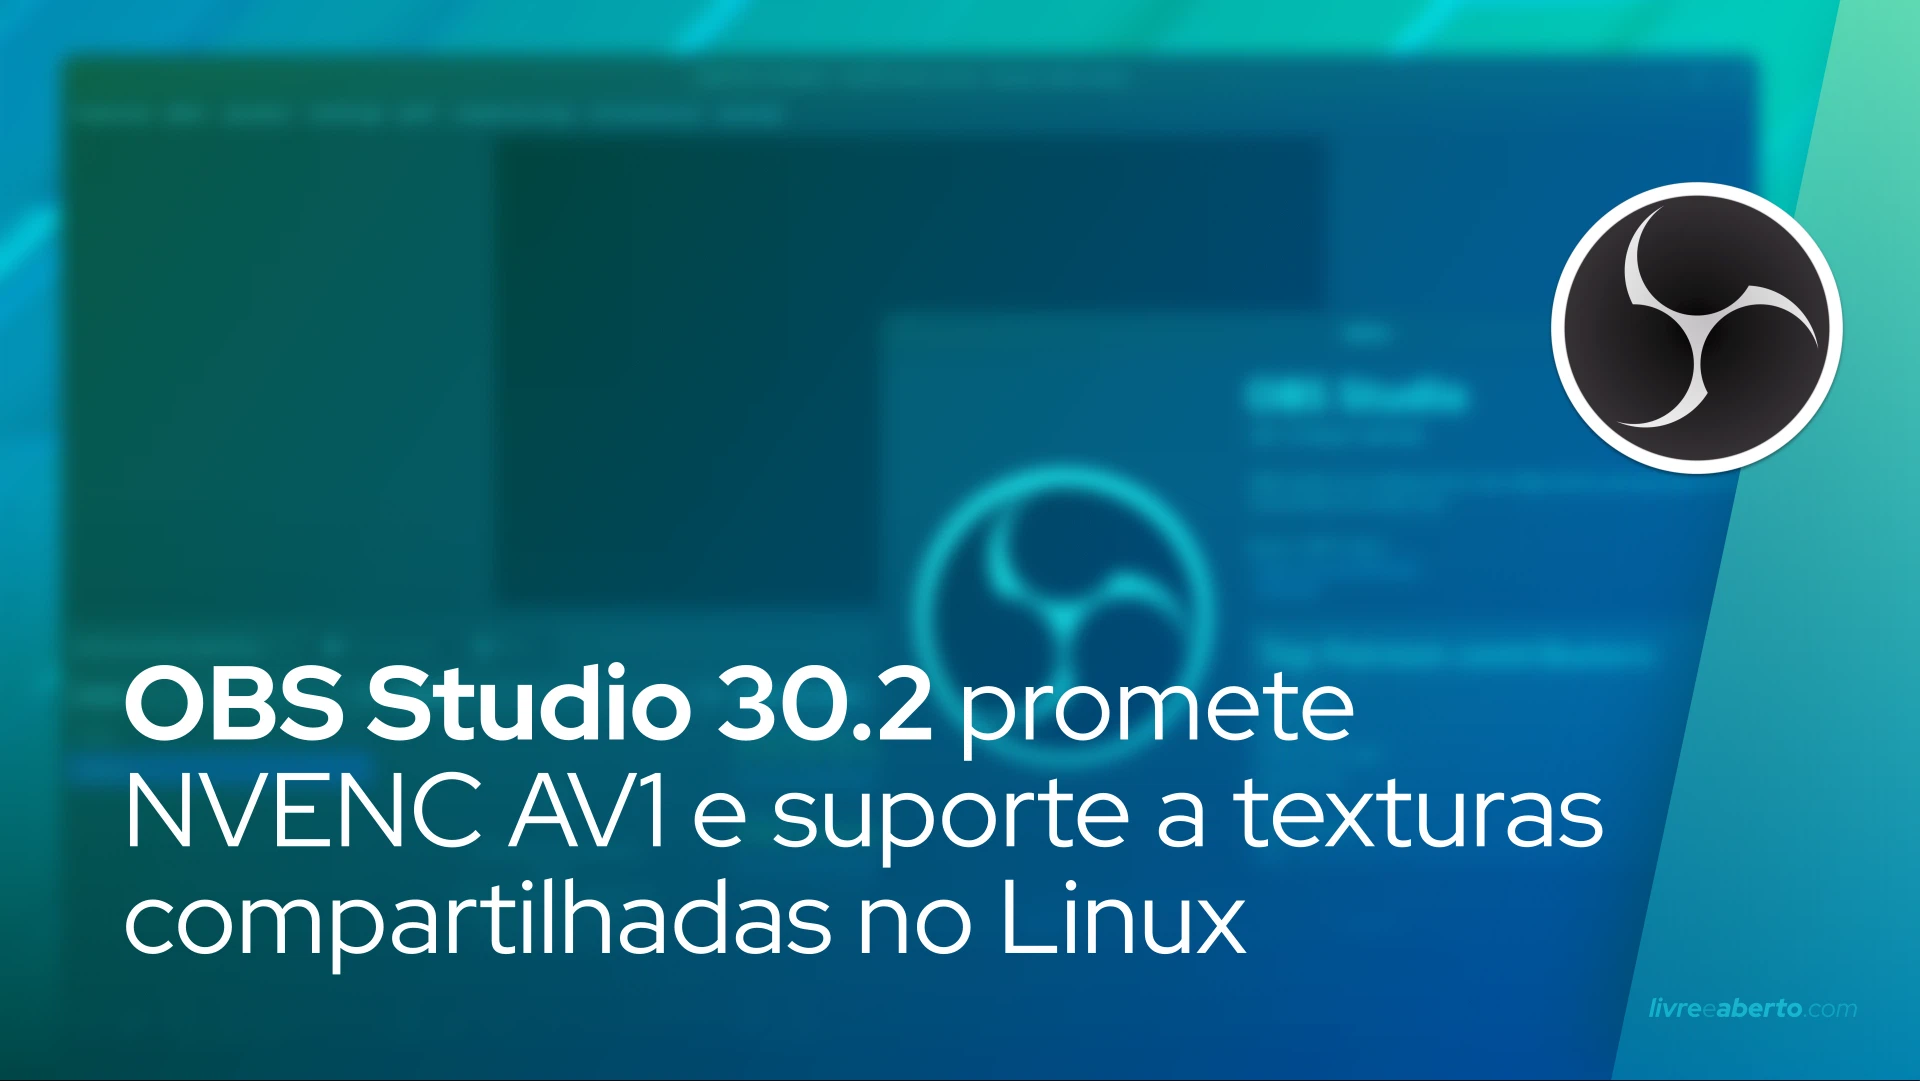 OBS Studio 30.2 promete NVENC AV1 e suporte a texturas compartilhadas no Linux